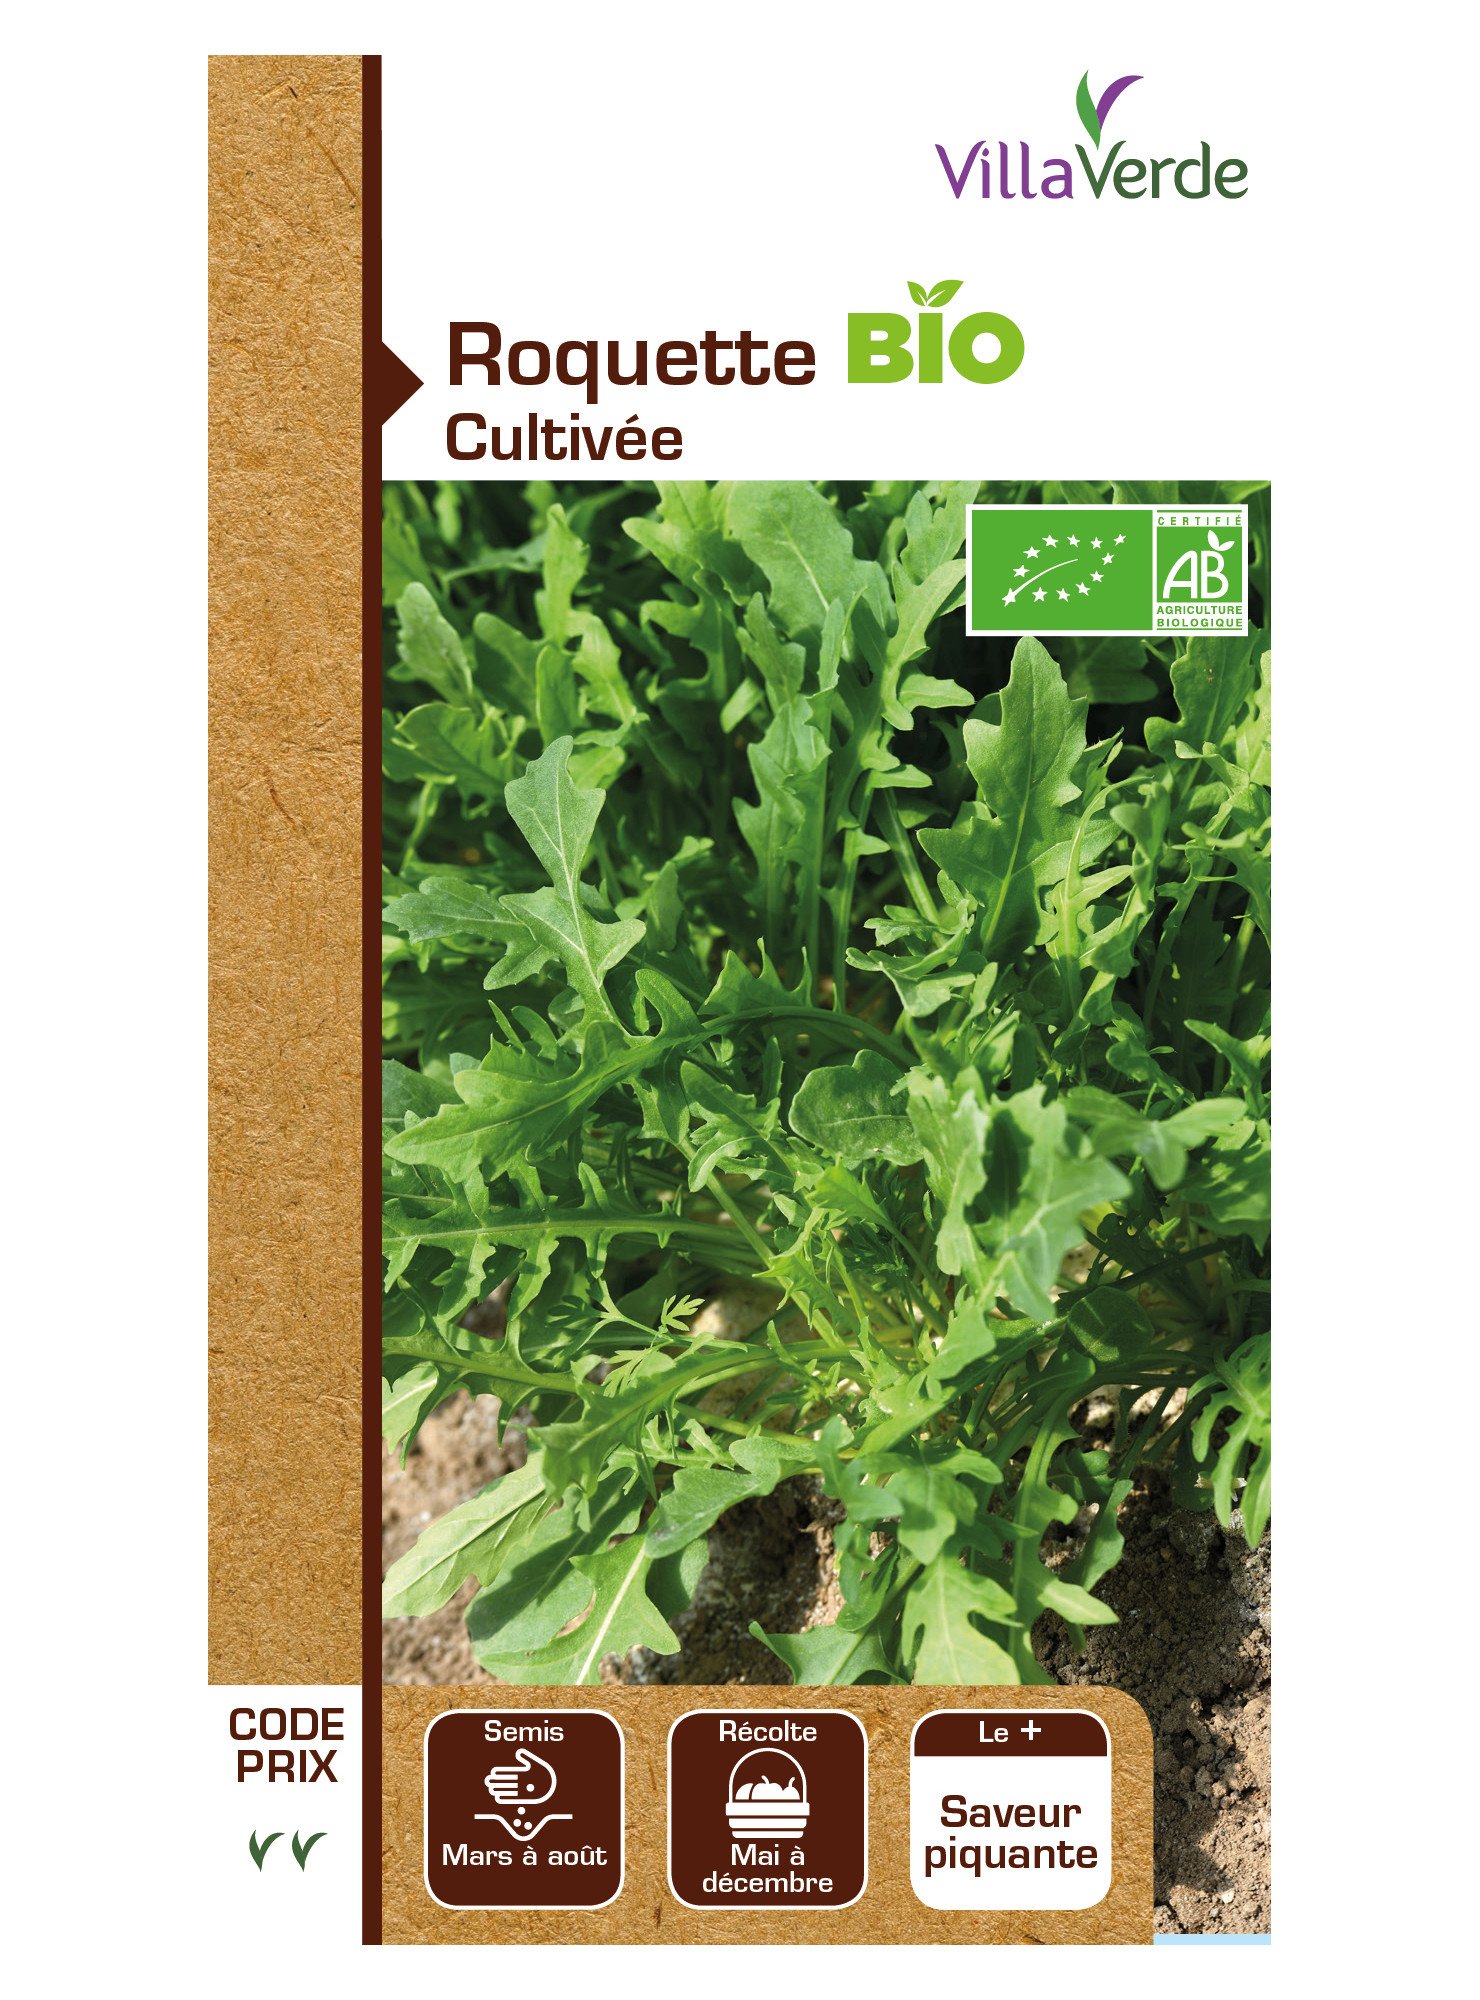 Roquette cultivee bio cp2 de Villaverde dans Roquette